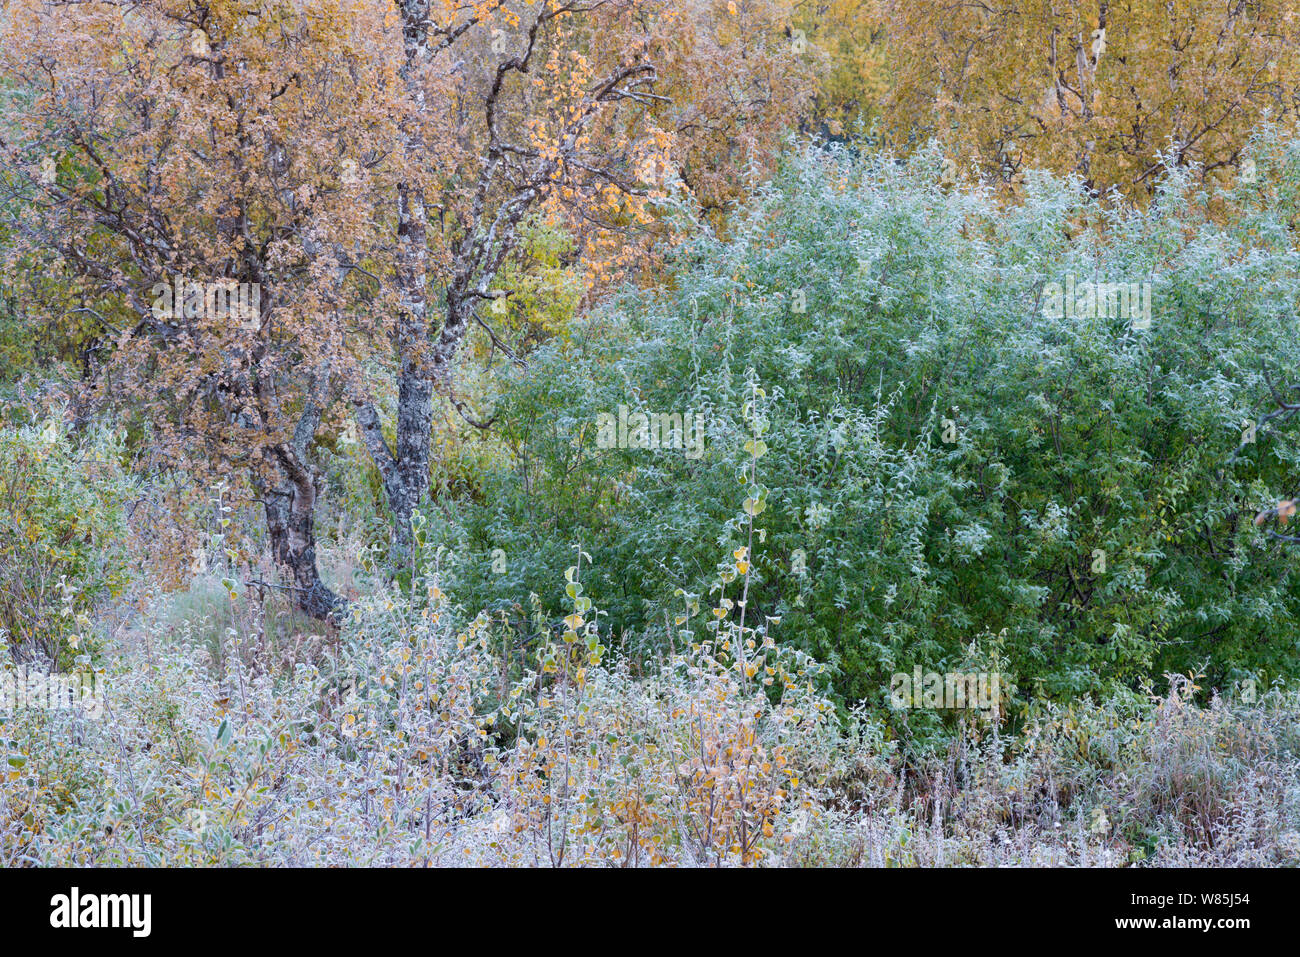 La végétation couverte de gel à l'automne dans le Sarek National Park. Laponia Patrimoine mondial, en Laponie suédoise, la Suède. Septembre 2009. Banque D'Images